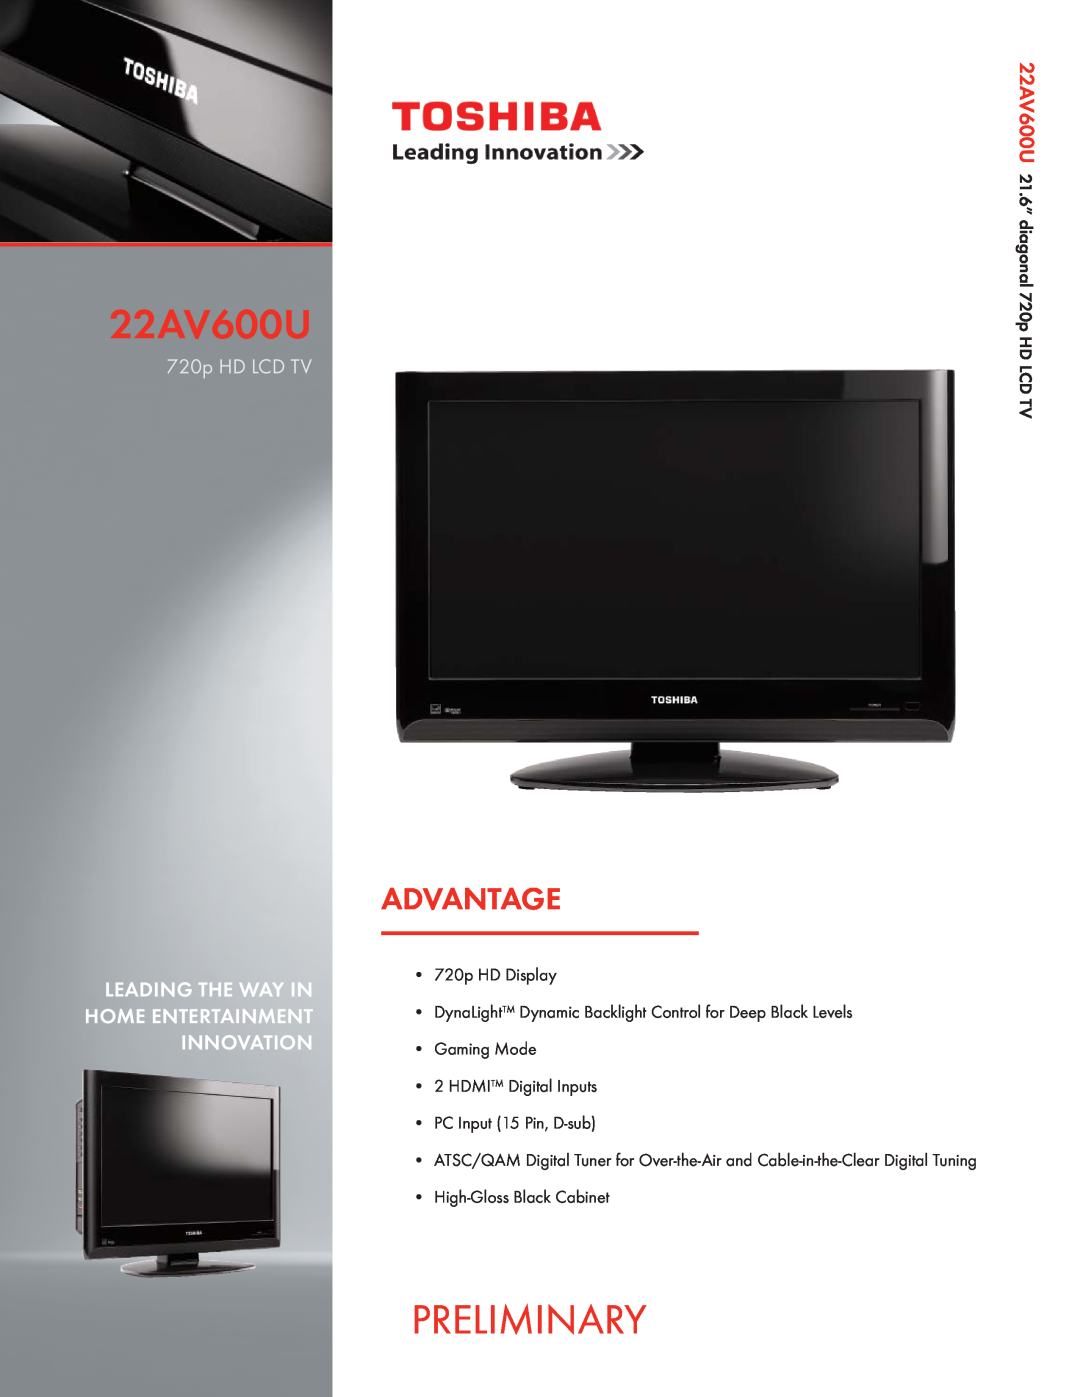 Toshiba manual Preliminary, Advantage, 22AV600U26AV502U, 720p HD LCD TV with CineSpeed 